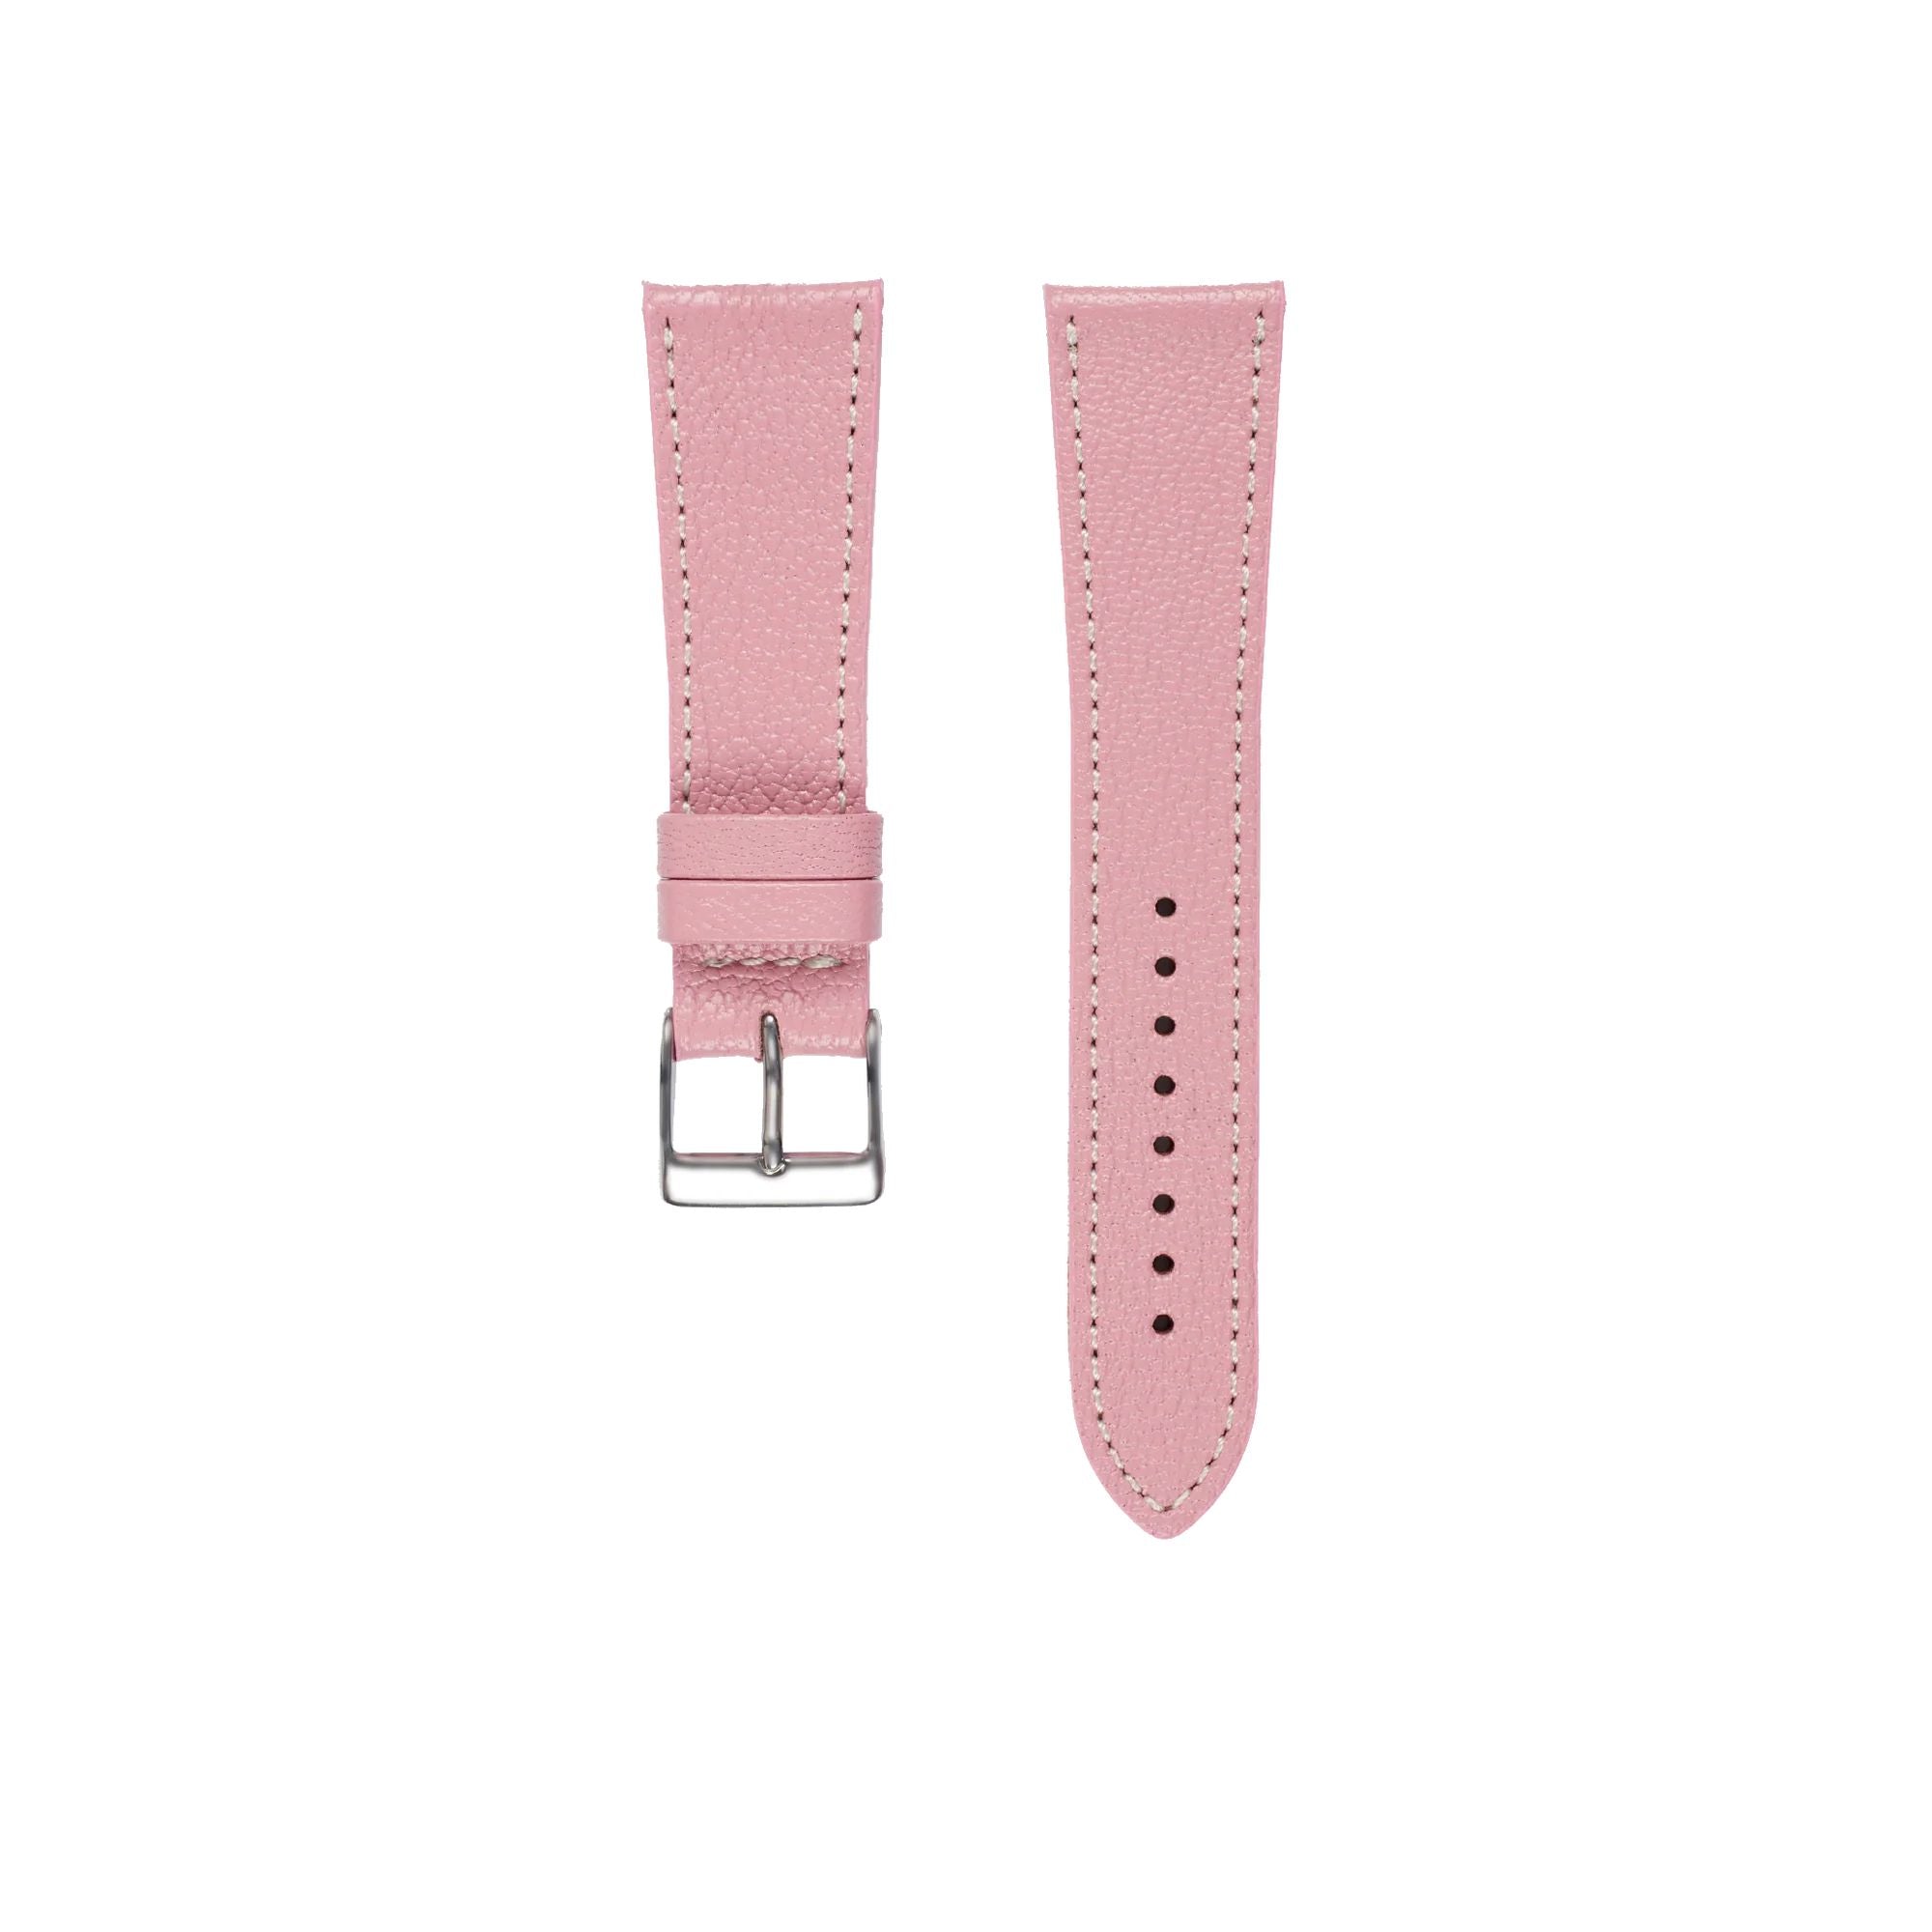 Goat Leather Slim | Armband aus Ziegenleder kompatibel mit Apple Watch-Pink-BerlinBravo